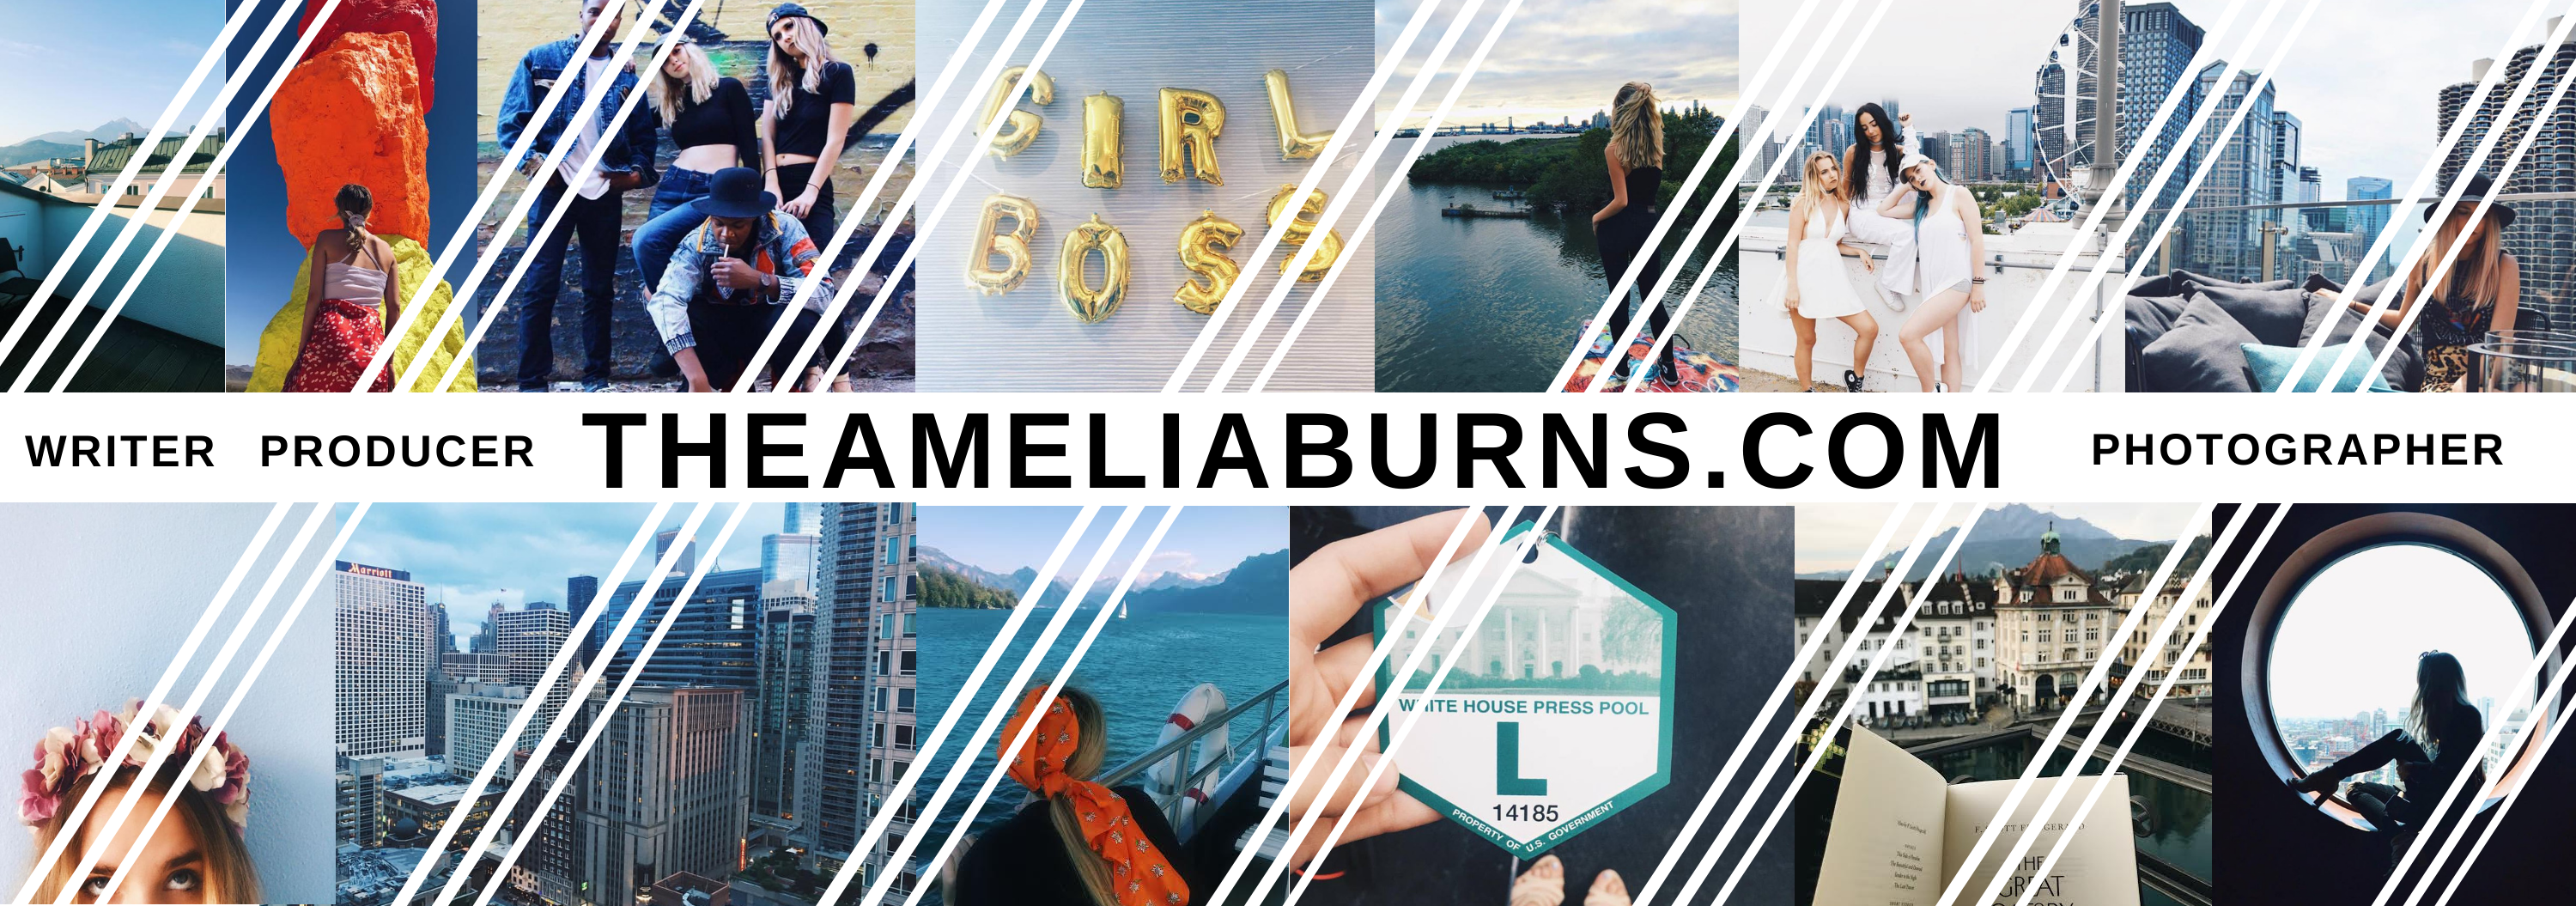 The Amelia Burns Portfolio & Lifestyle blog